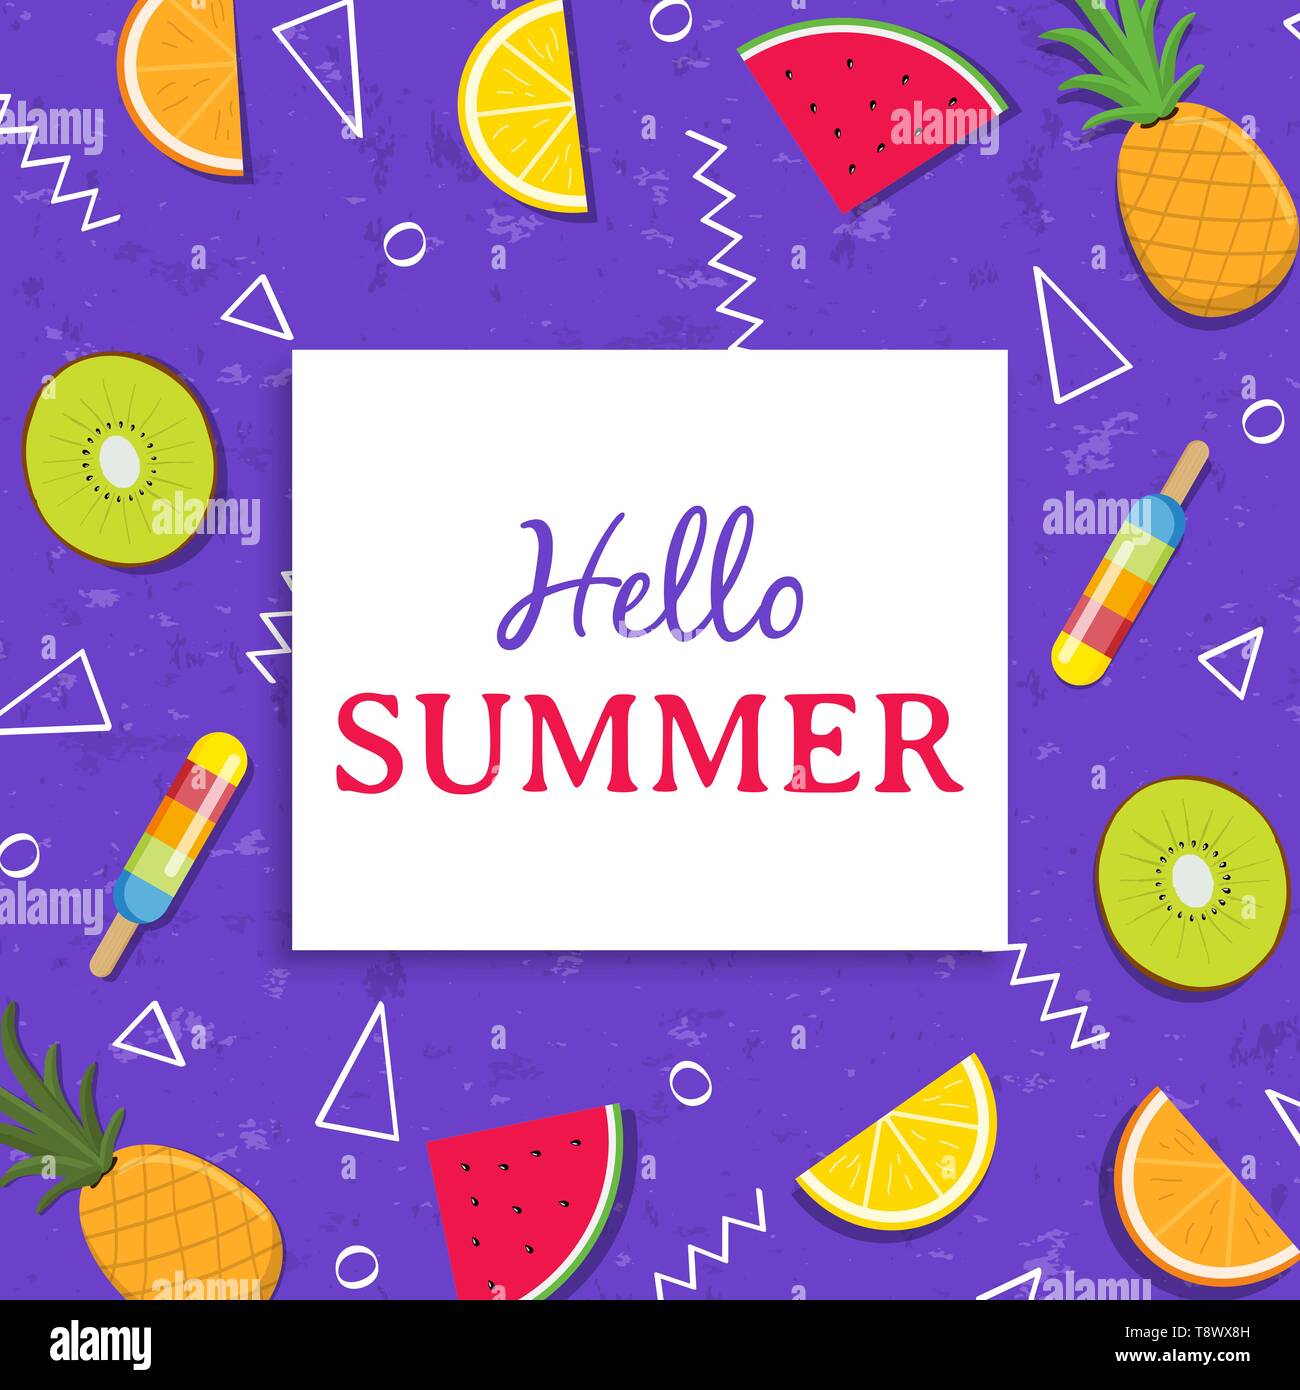 Hallo Sommer Grußkarte Abbildung von bunten tropischen Früchten Eiscreme. Mit Wassermelonen, Ananas, Kiwi, Orange Slice. Stock Vektor